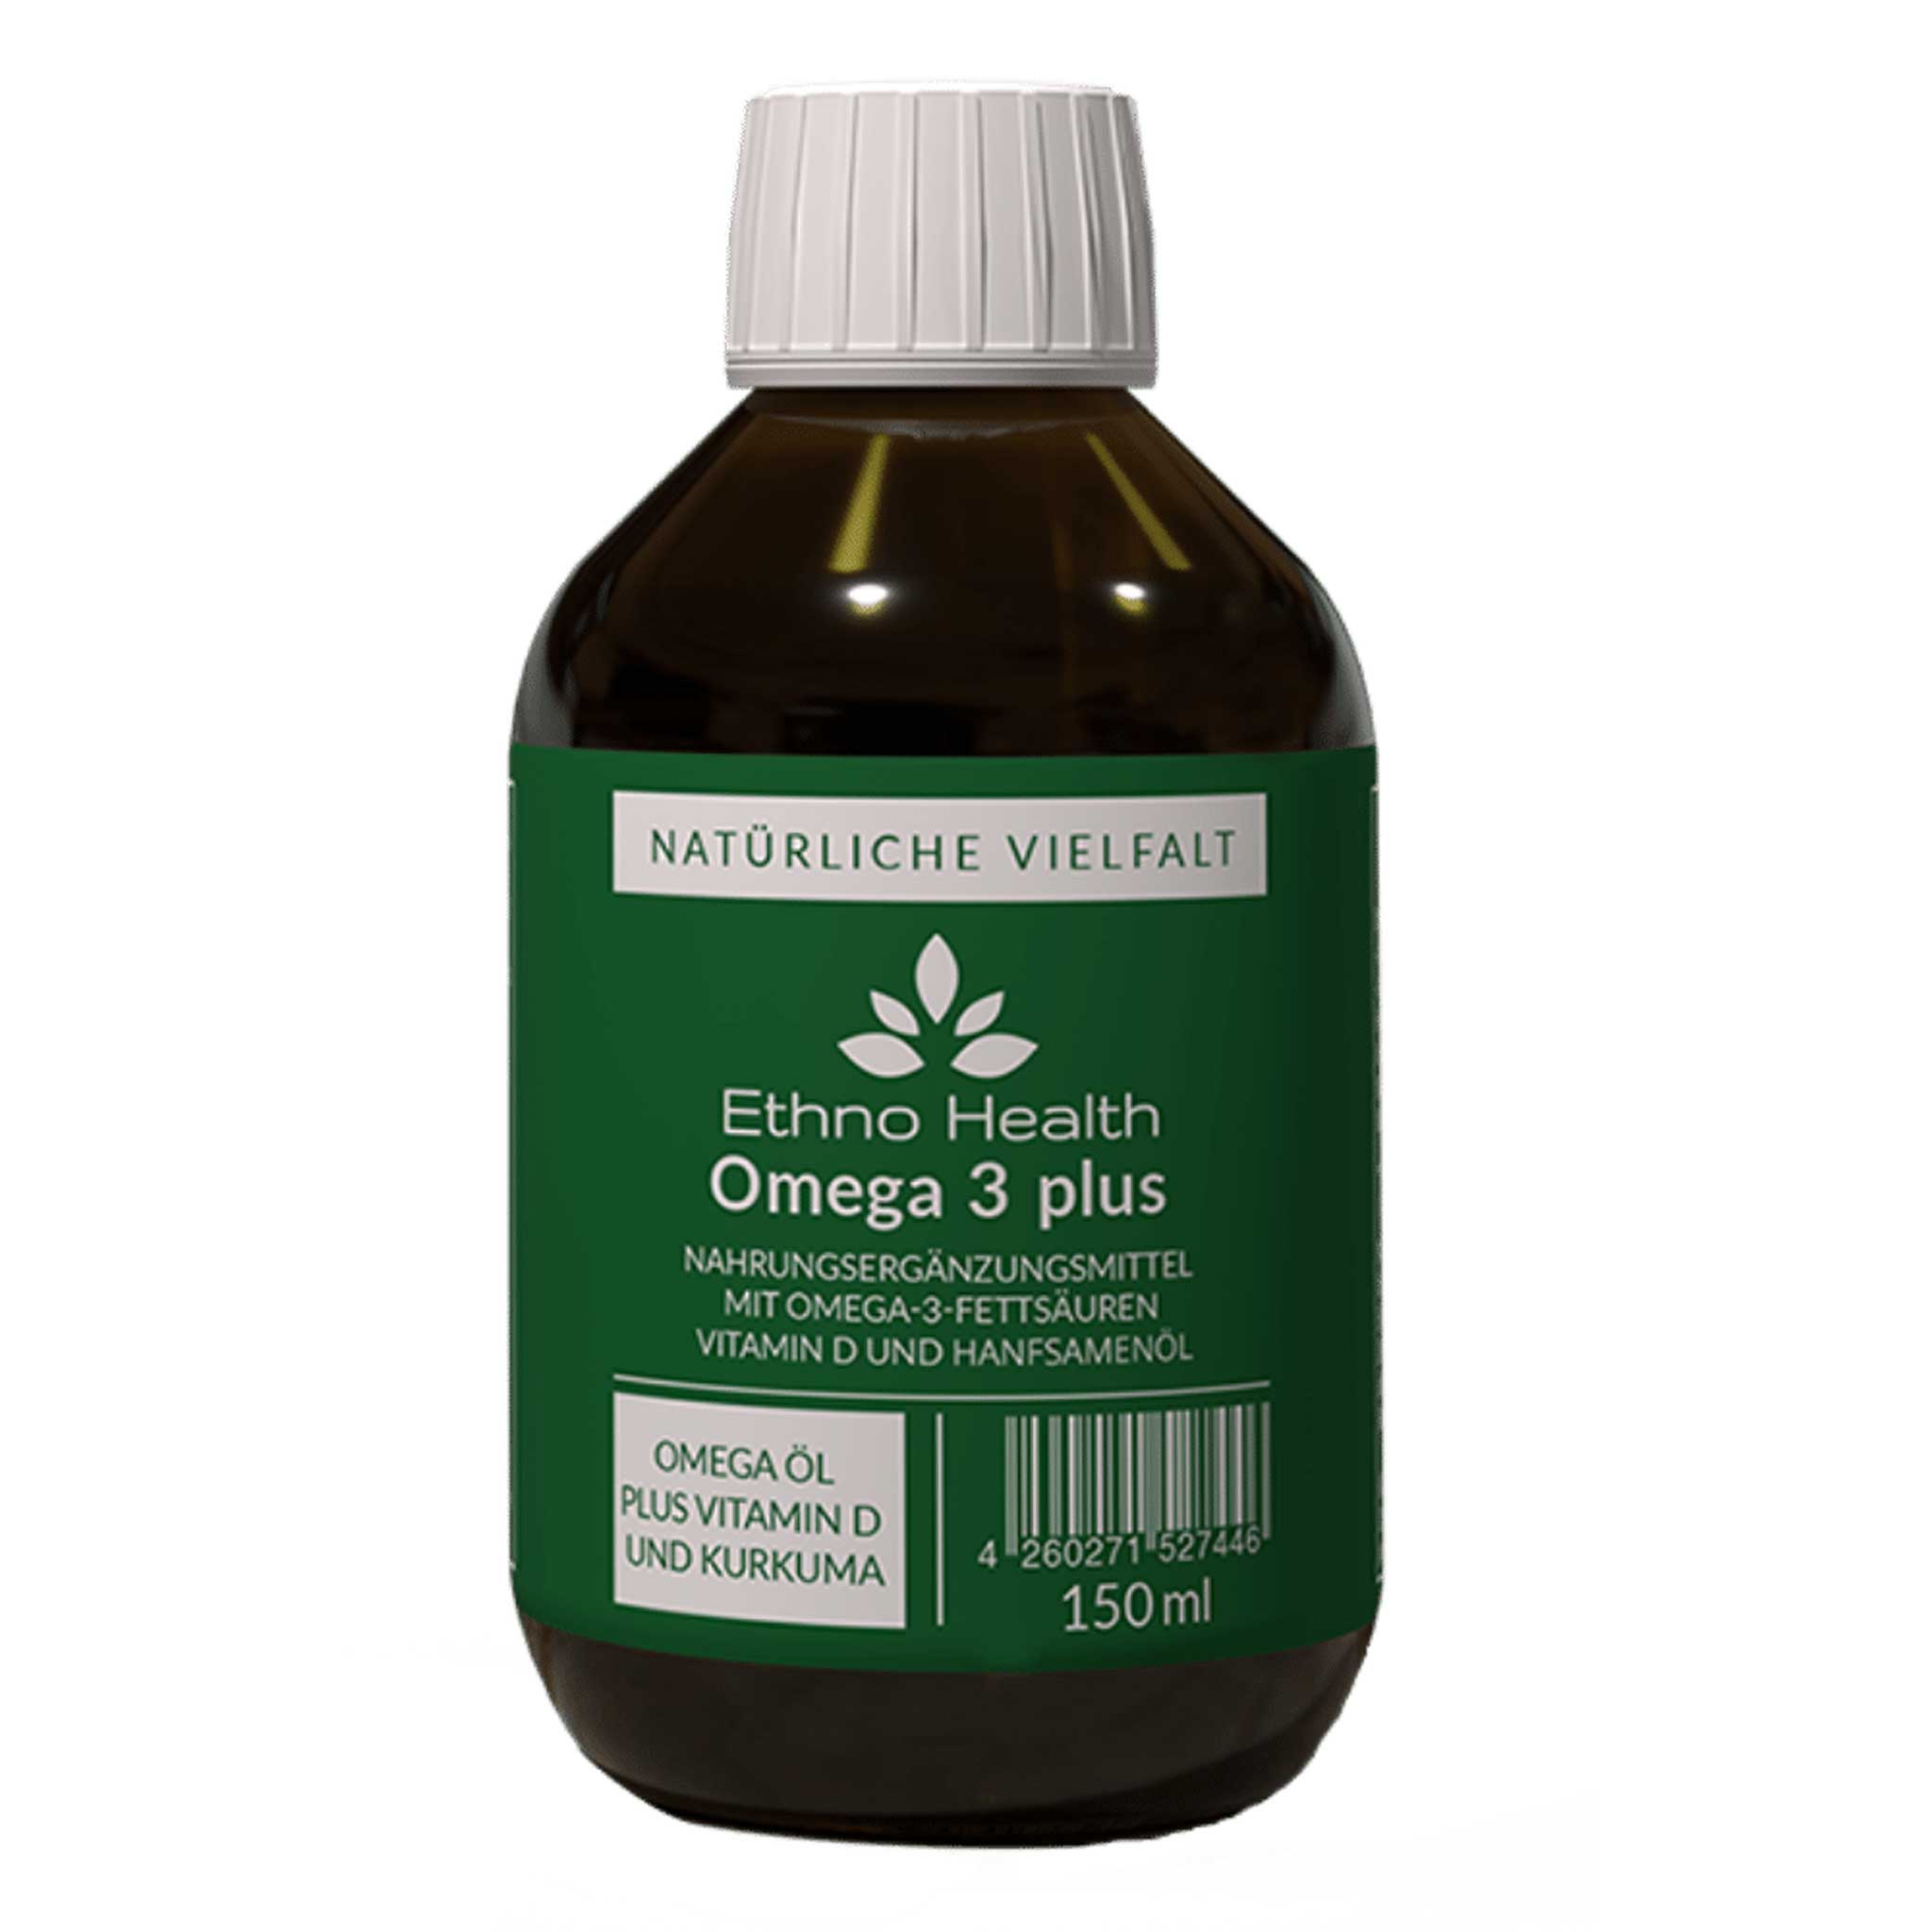 Omega 3 Plus von Ethno Health in 150 Milliliter Packung